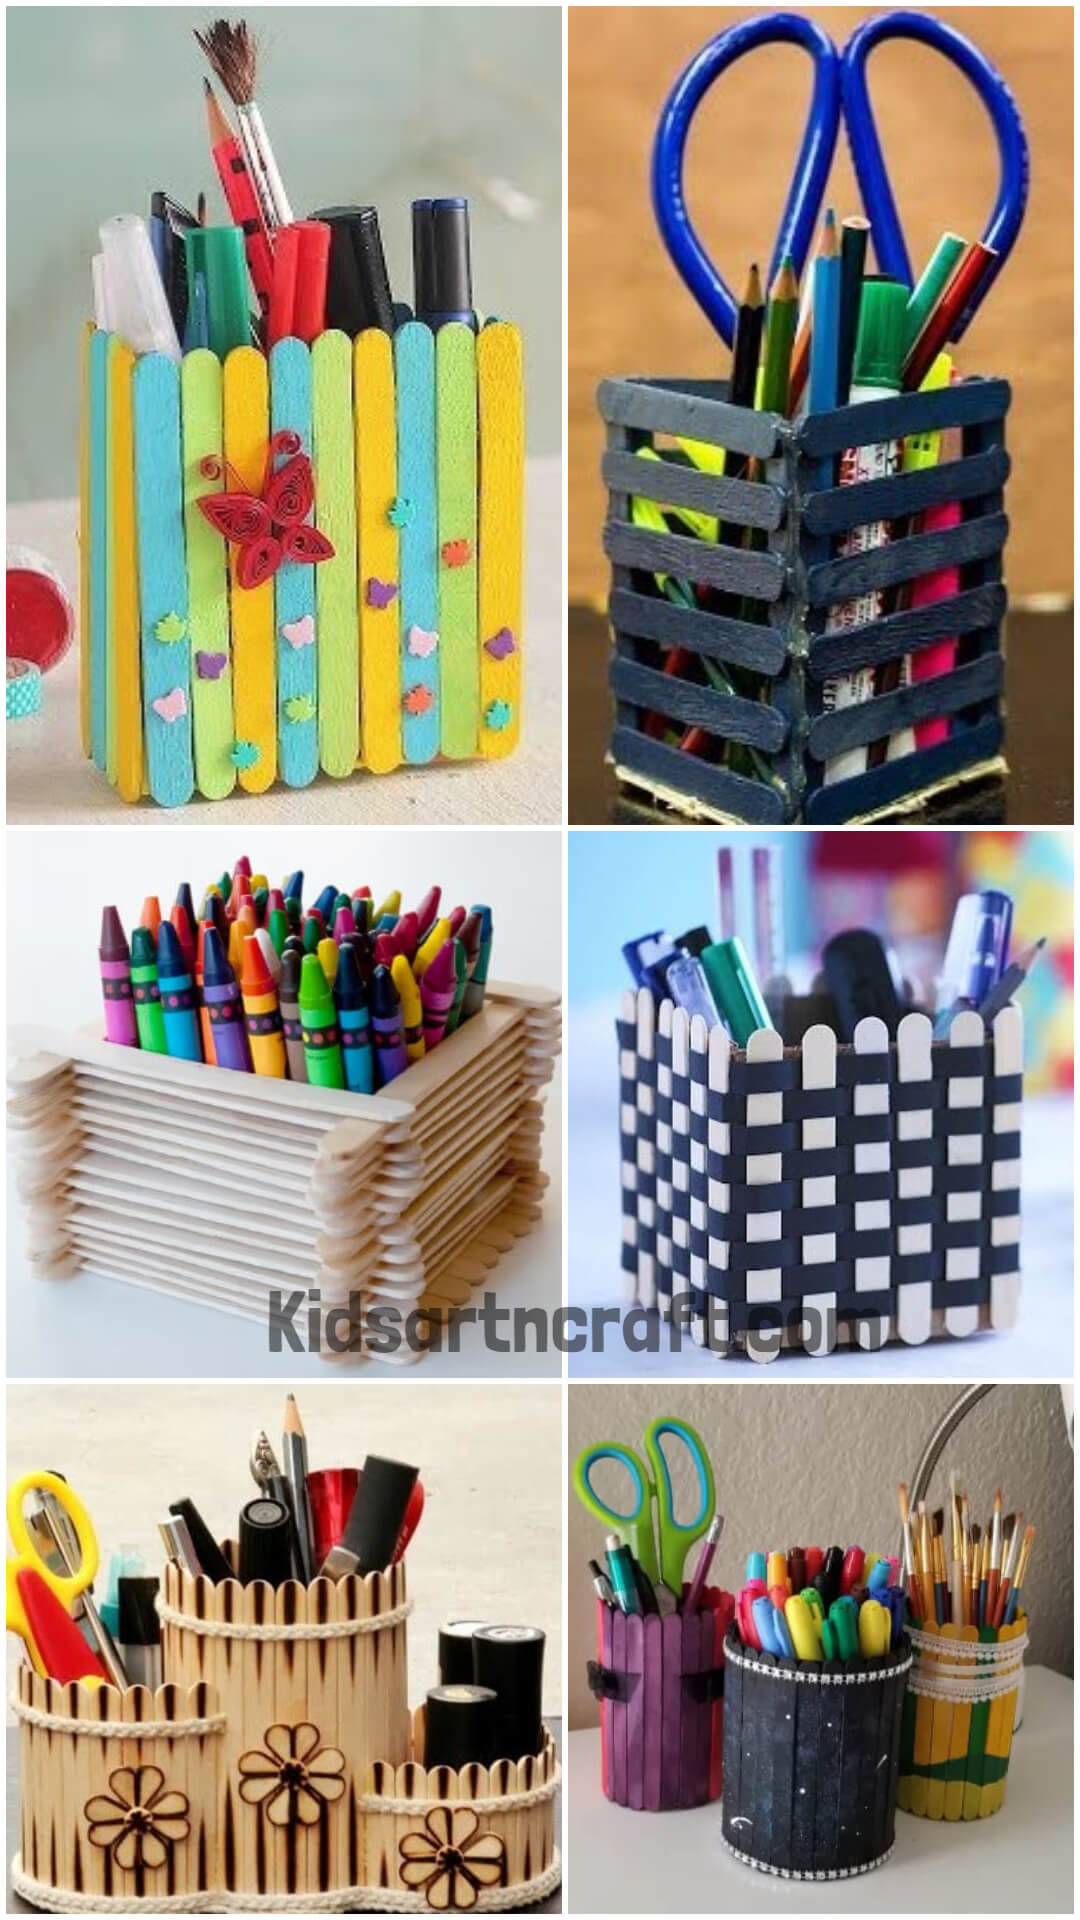 DIY Popsicle Stick Desk Organizer Crafts For Kids